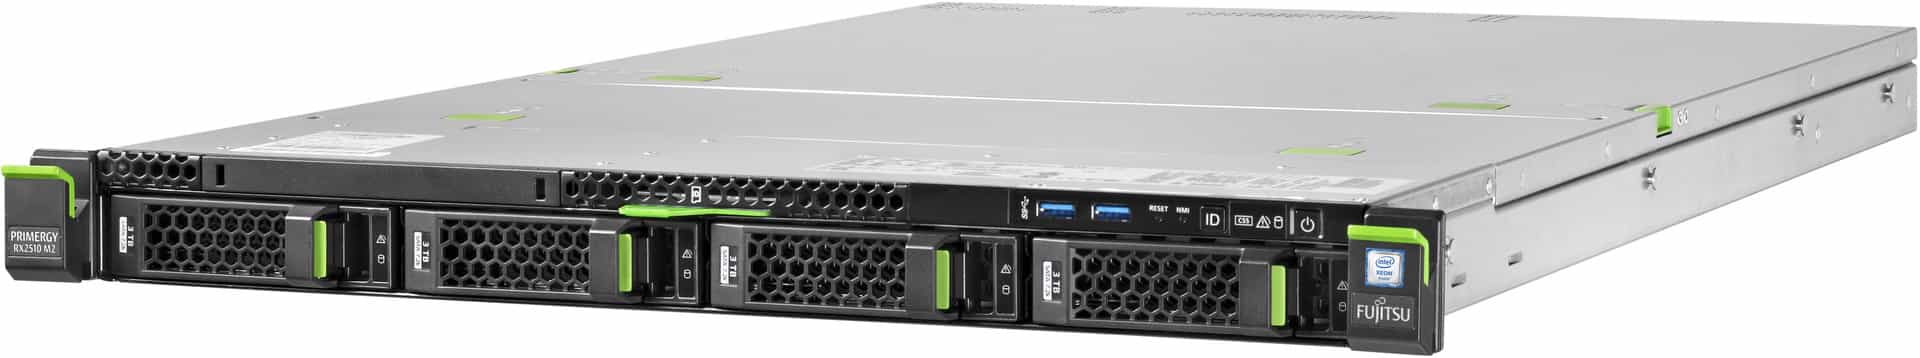 Стоечный сервер Fujitsu Primergy PY RX2530 M1 4ая конфигурация-1